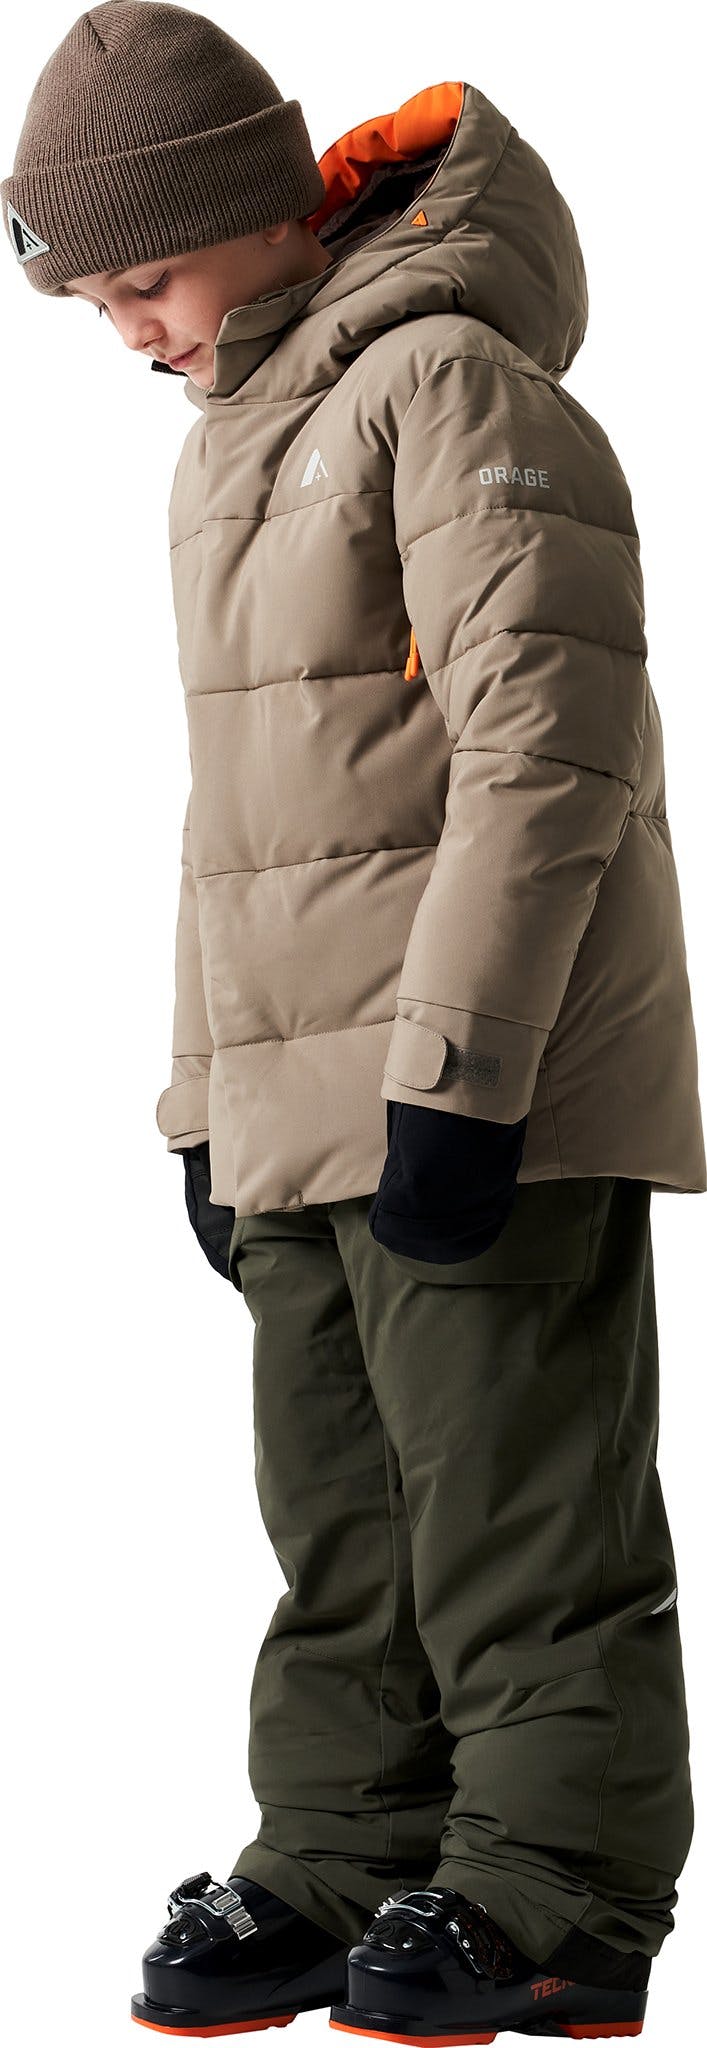 Numéro de l'image de la galerie de produits 2 pour le produit Manteau en duvet synthétique Redford - Garçons